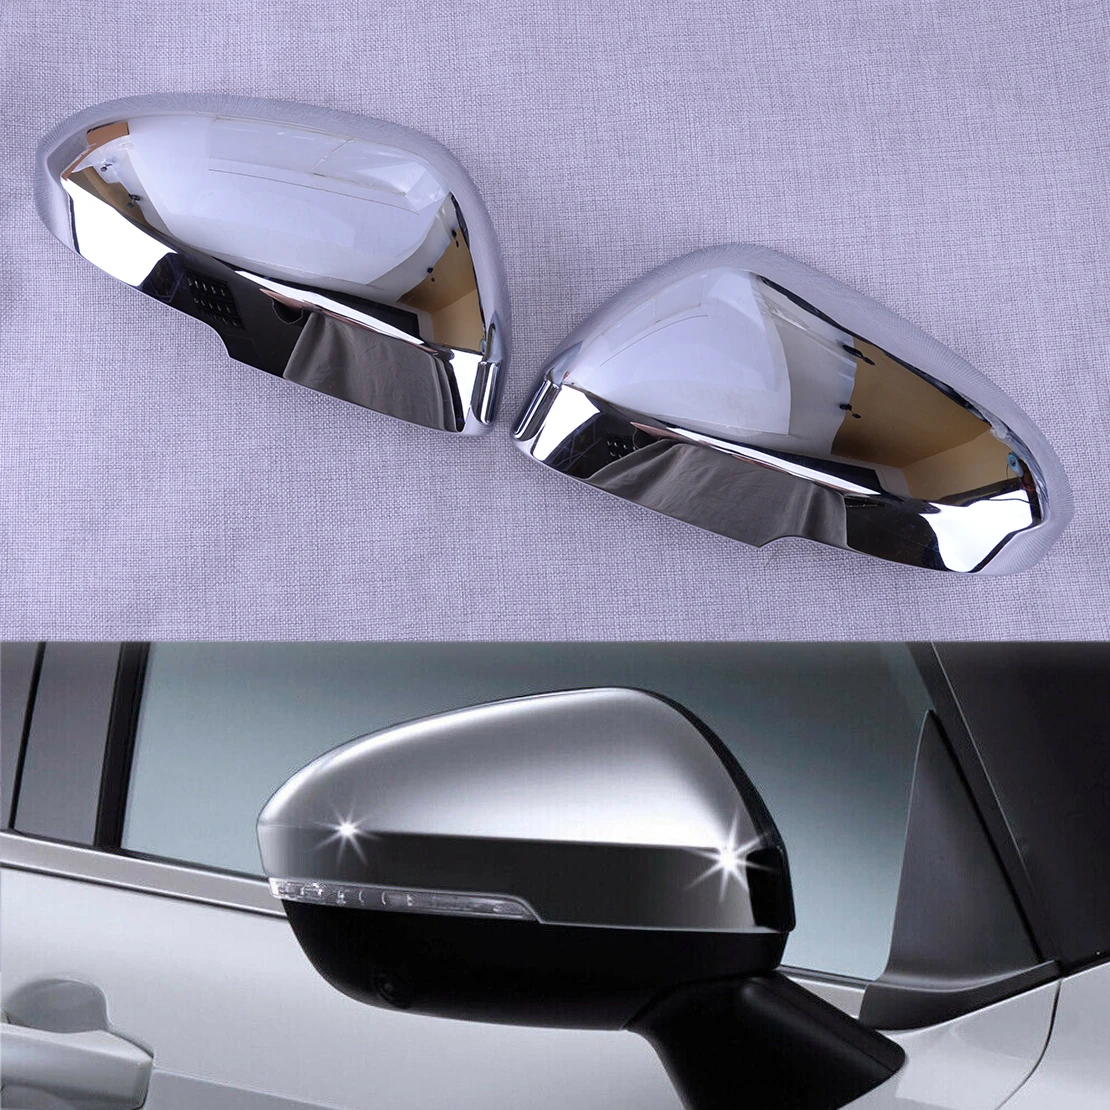 

1 пара, хромированная накладка на зеркало заднего вида для передней левой и правой стороны автомобиля Mitsubishi Outlander 2022